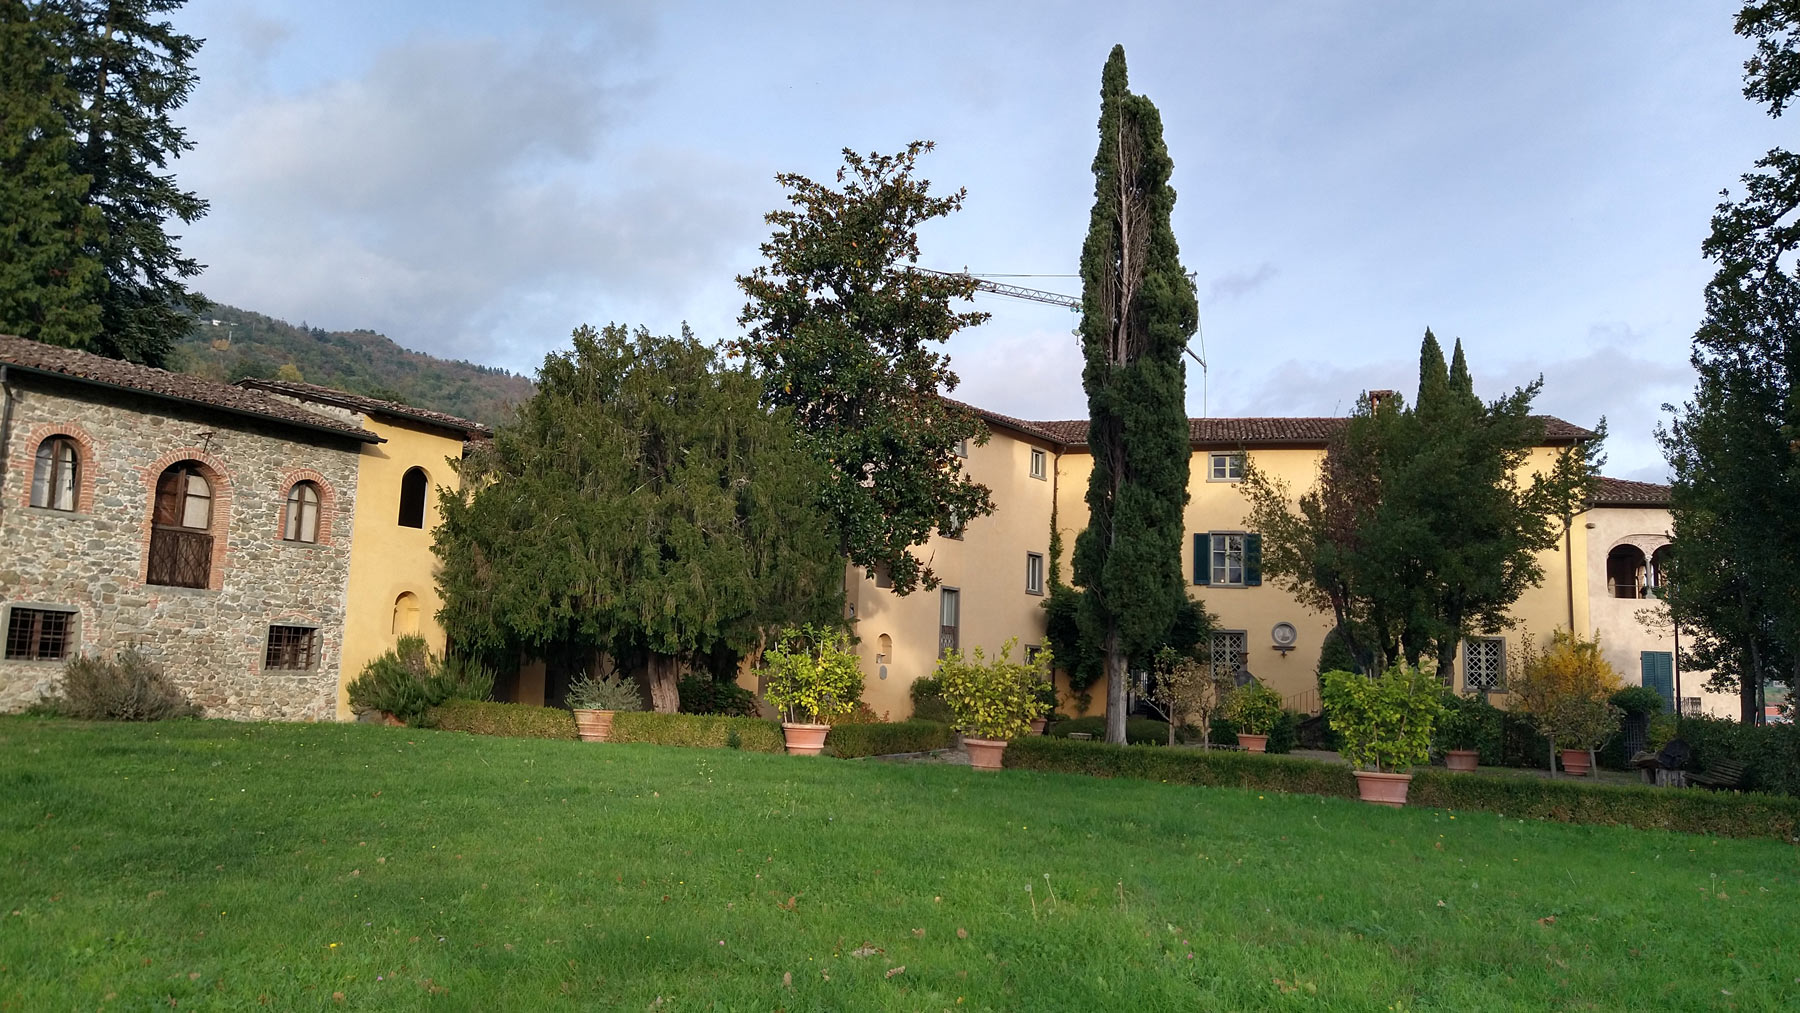 Giovanni Pascoli's house in Castelvecchio. Ph. Credit Finestre Sull'Arte